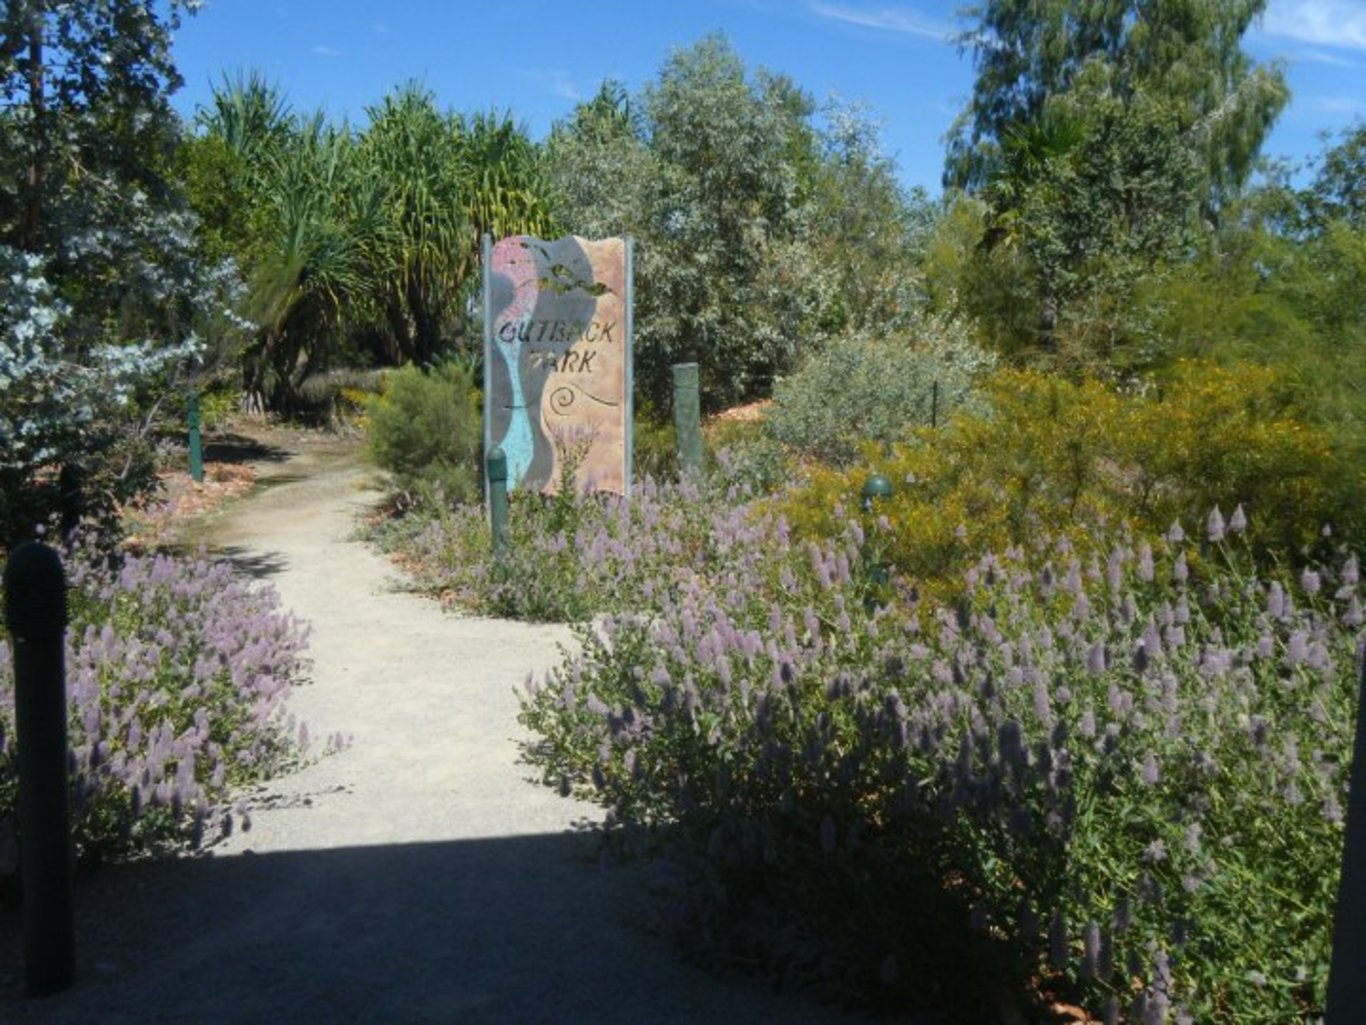  A bird-friendly garden. Karthryn Lambert, Author provided 